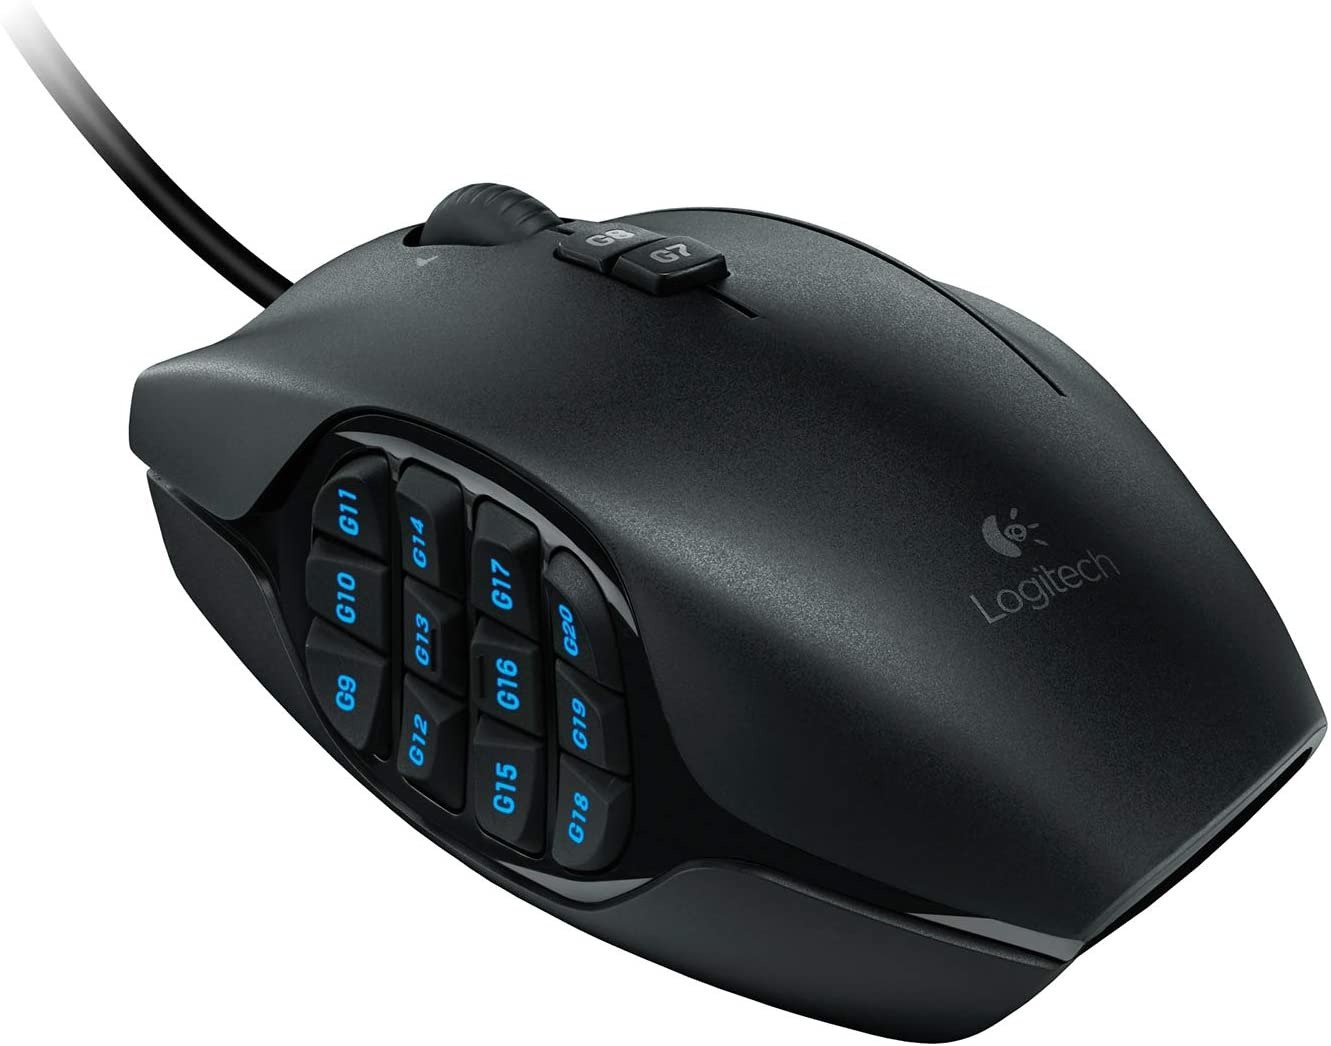 Logitech G600 Mouse